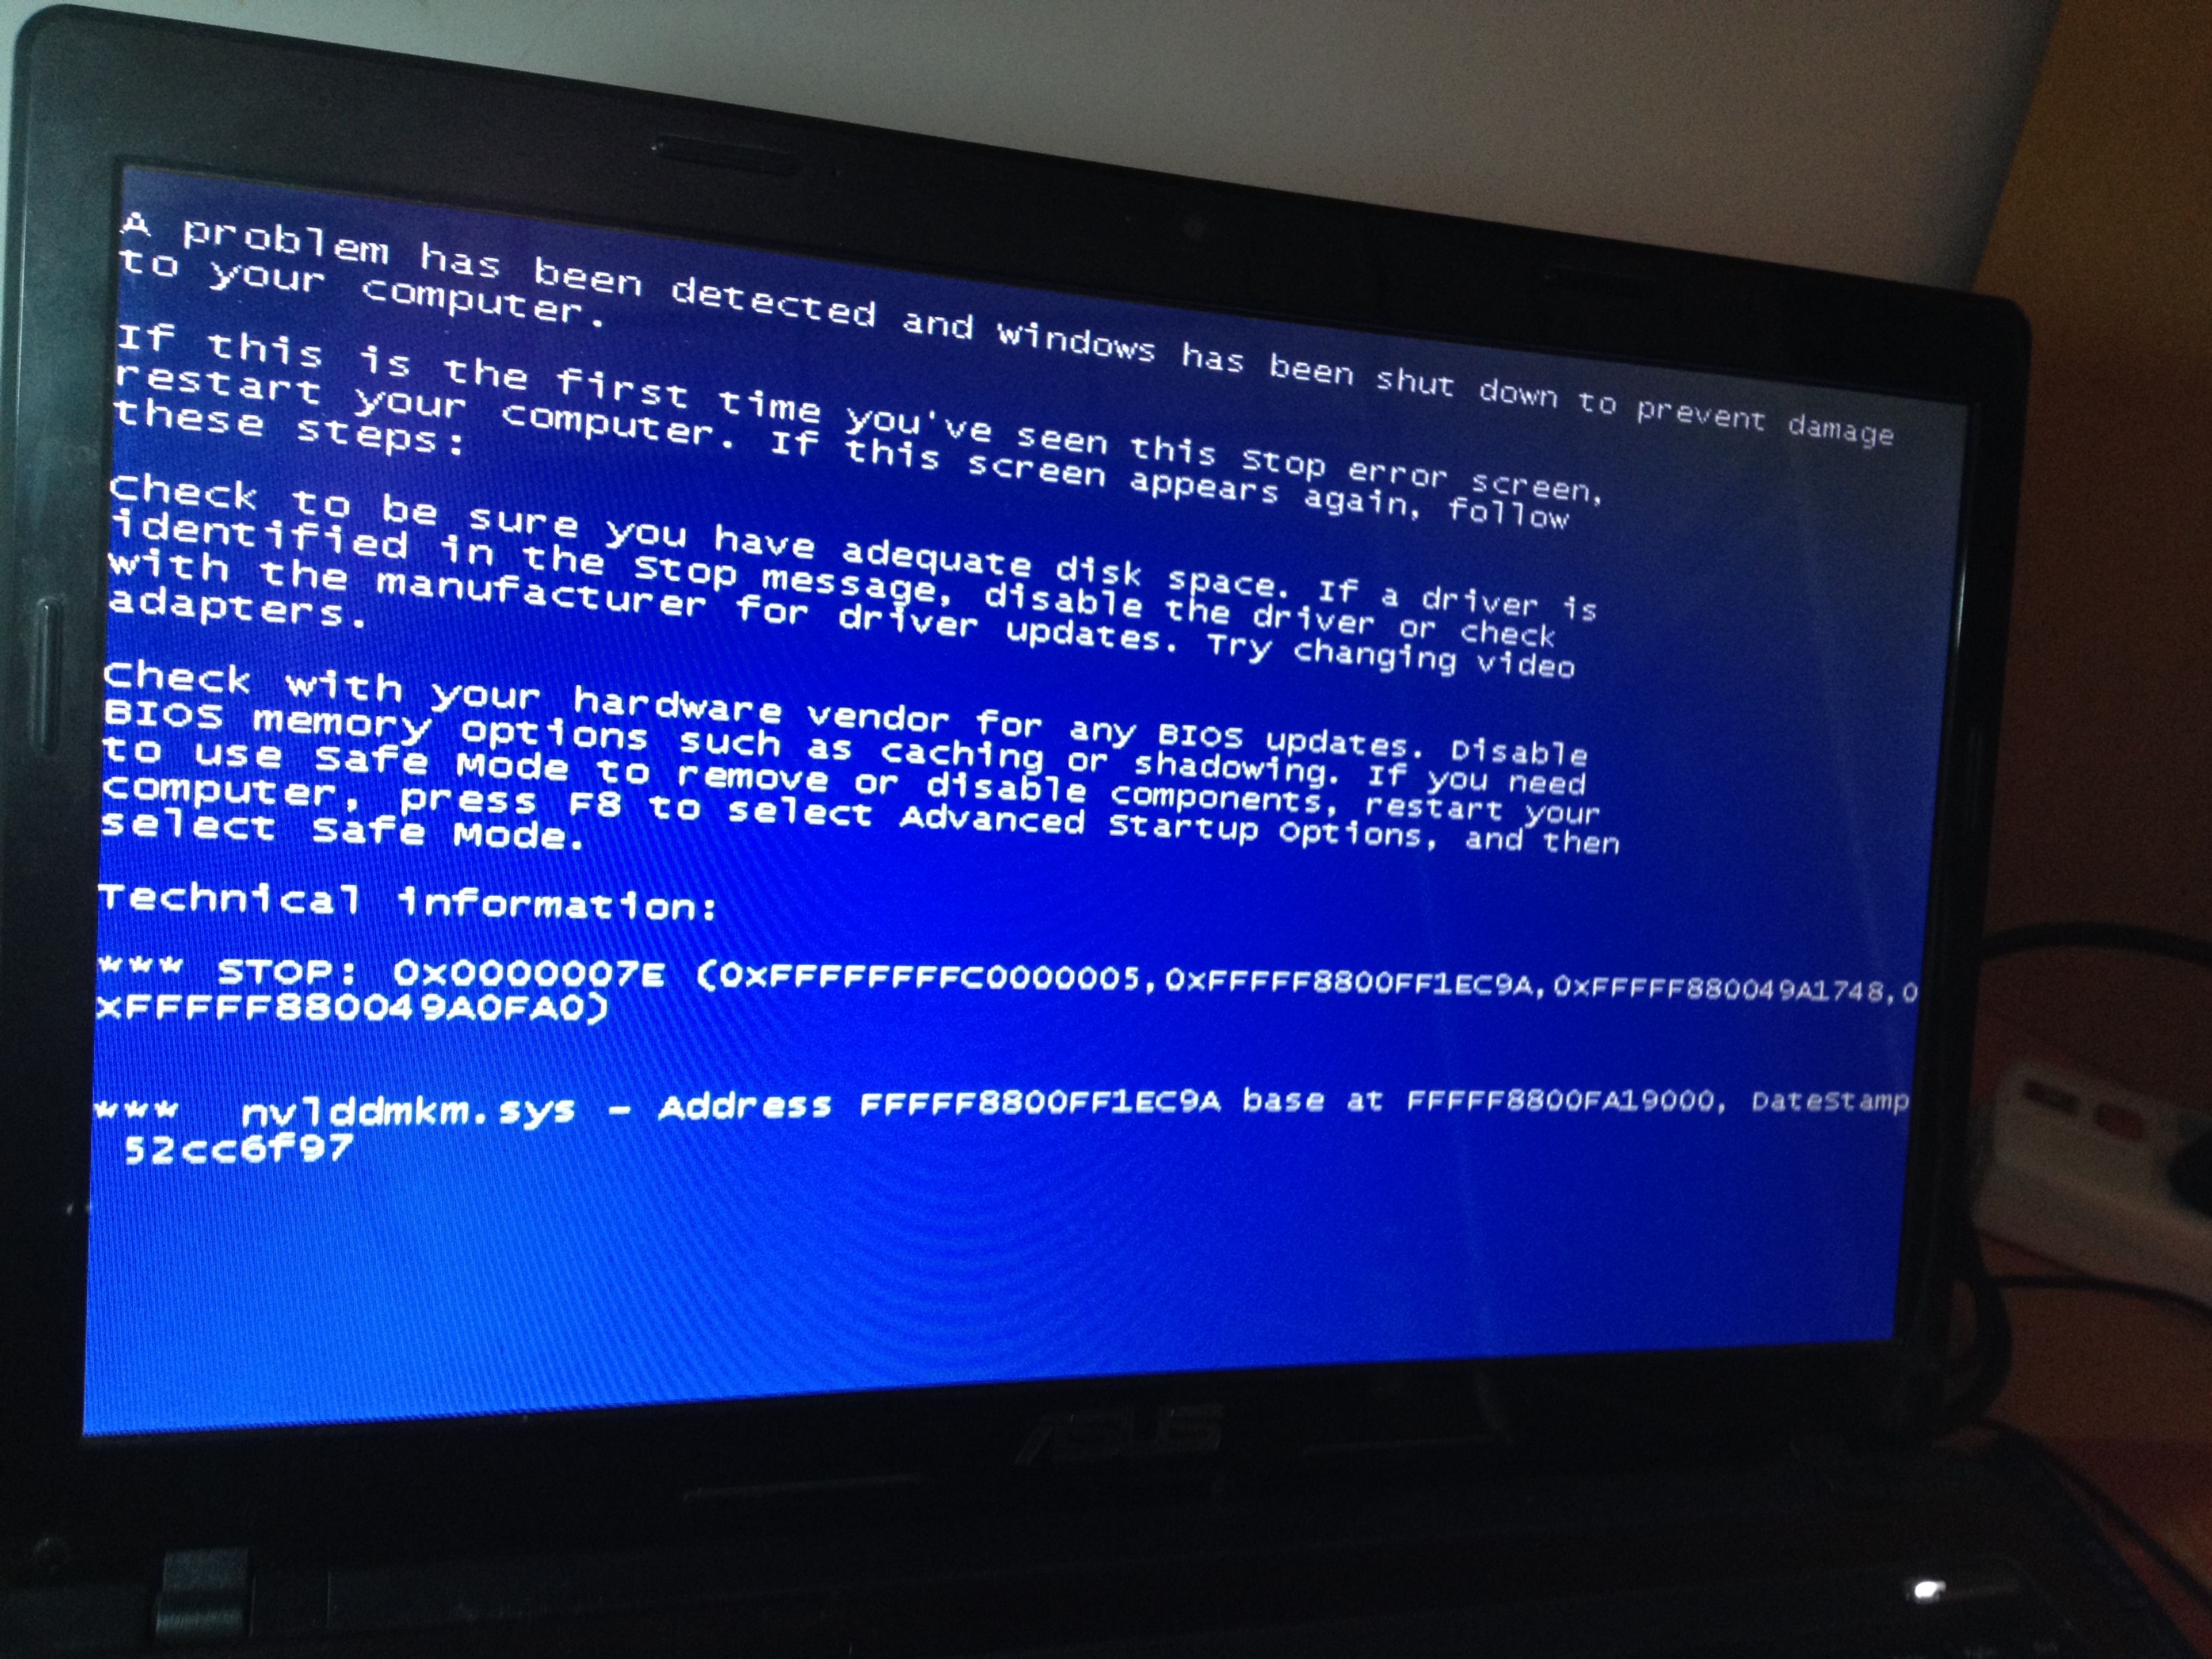 你好 我的电脑重装系统蓝屏了 错误代码是0x0000000a 该怎么解决啊